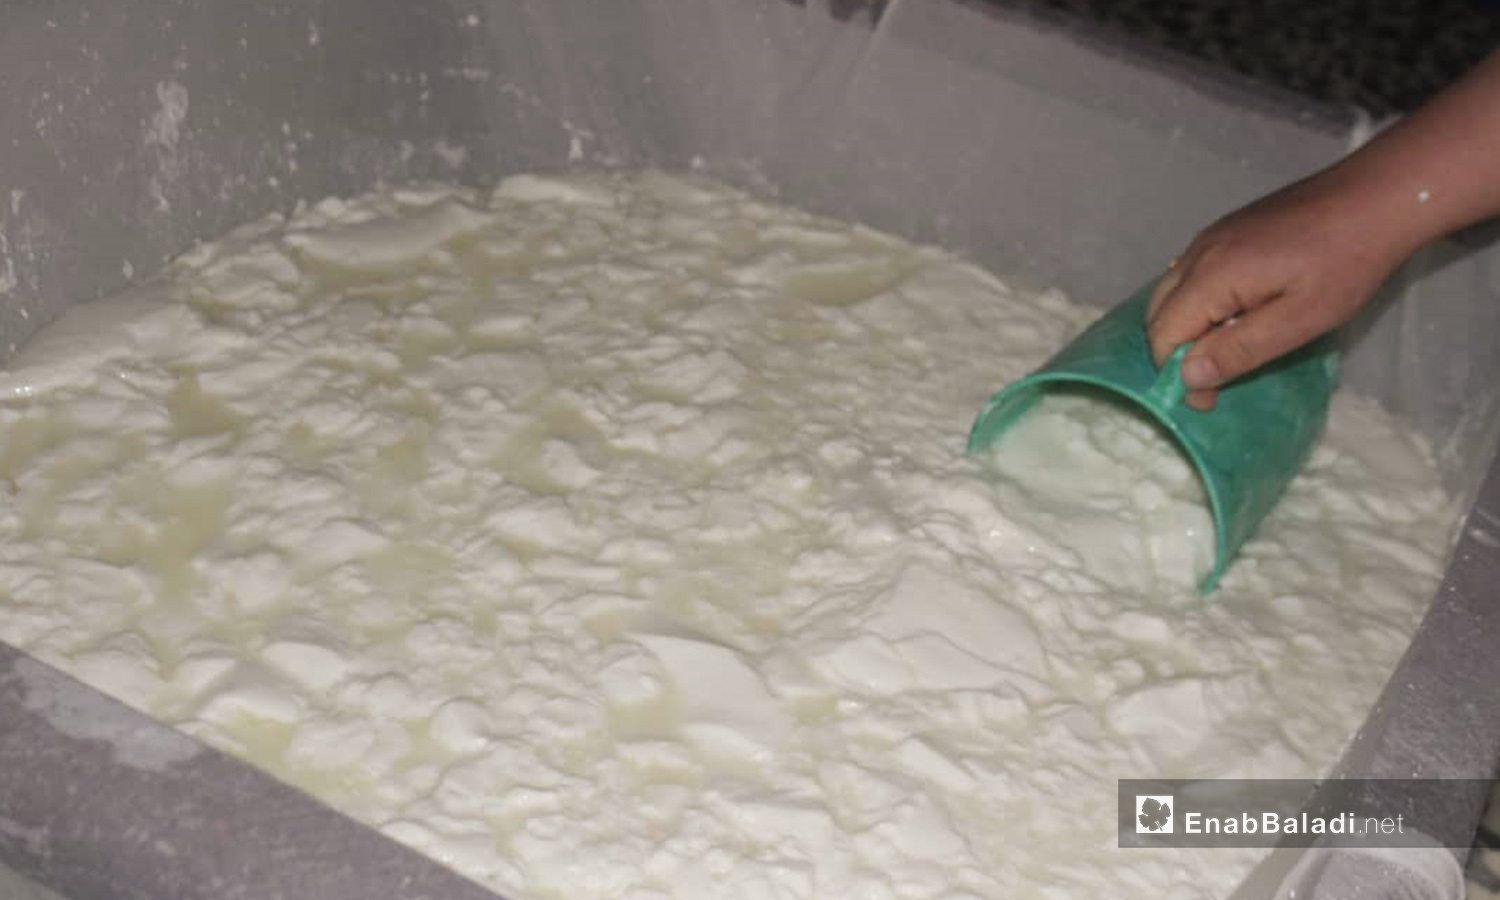 صناعة الجبنة في بلدة الدانا بريف إدلب الشمالي - 4 حزيران 2020 (عنب بلدي/شادية تعتاع)